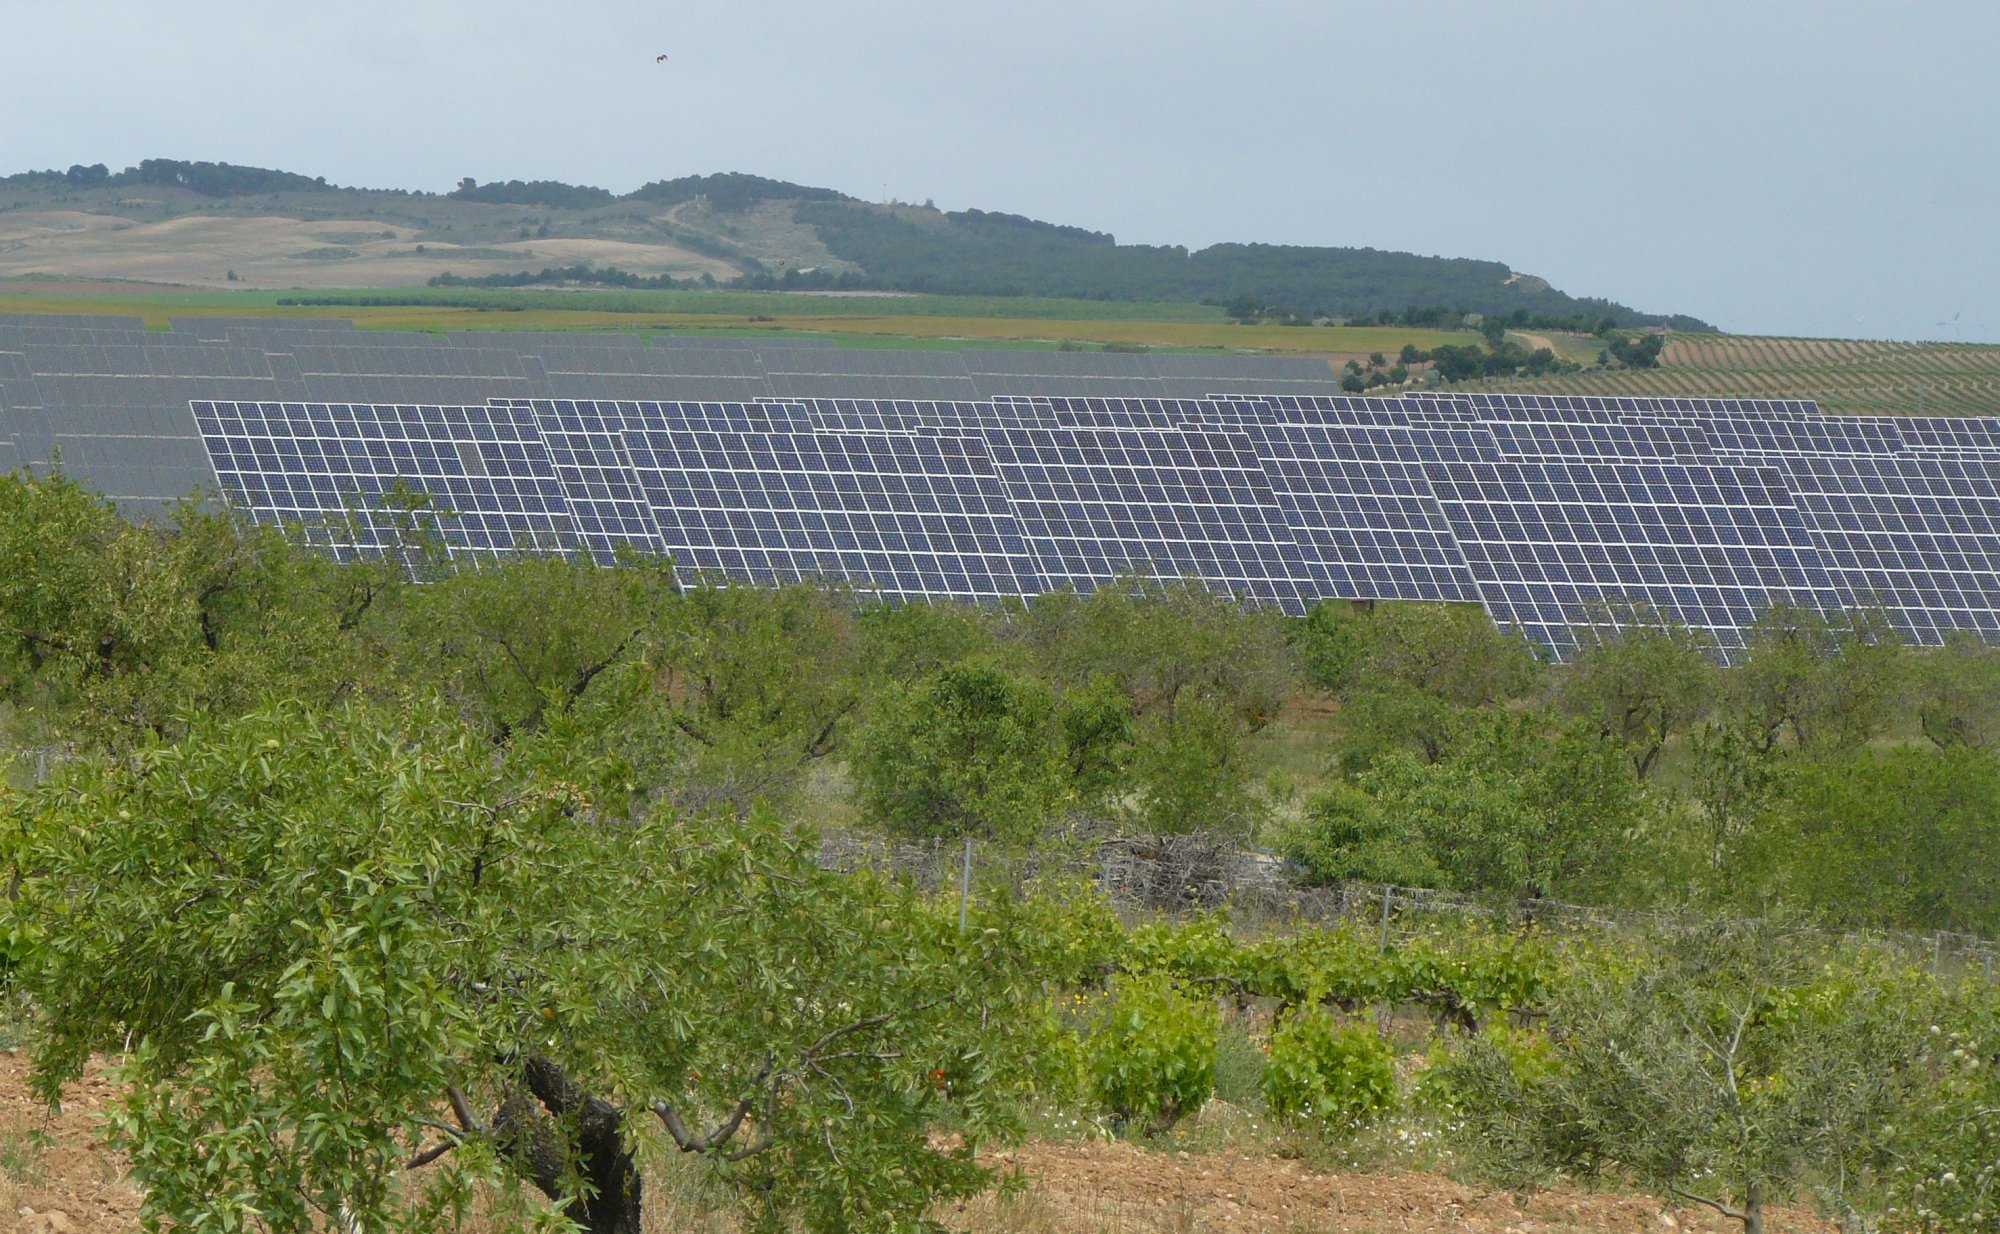 Solarfelder neben Weinreben und Mandelbäumen.jpg